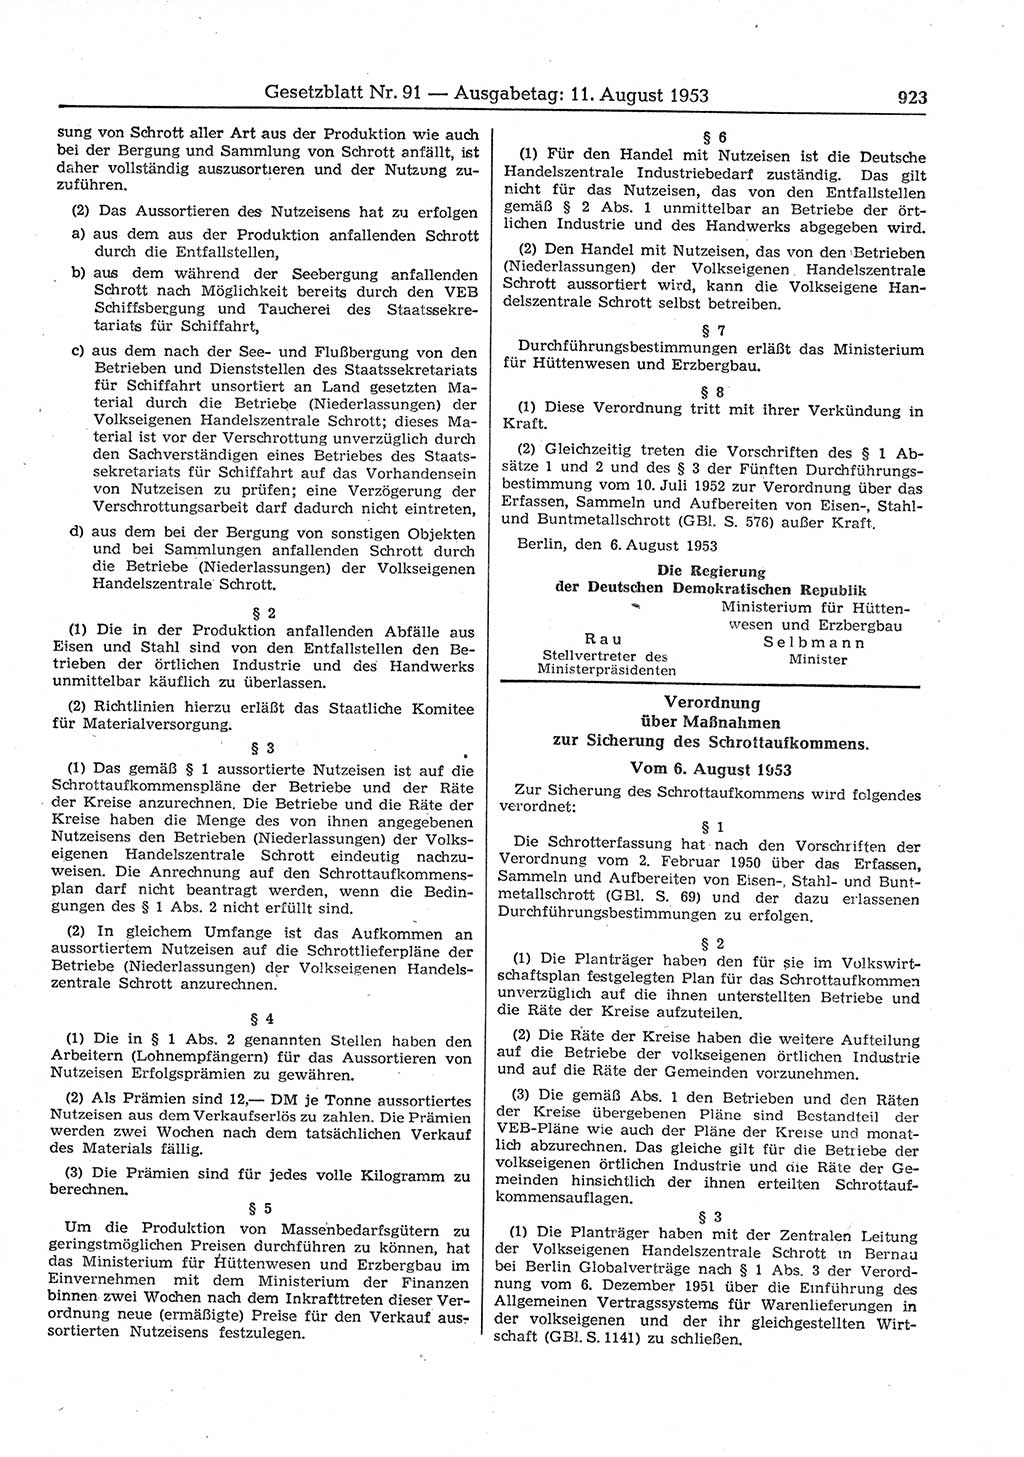 Gesetzblatt (GBl.) der Deutschen Demokratischen Republik (DDR) 1953, Seite 923 (GBl. DDR 1953, S. 923)